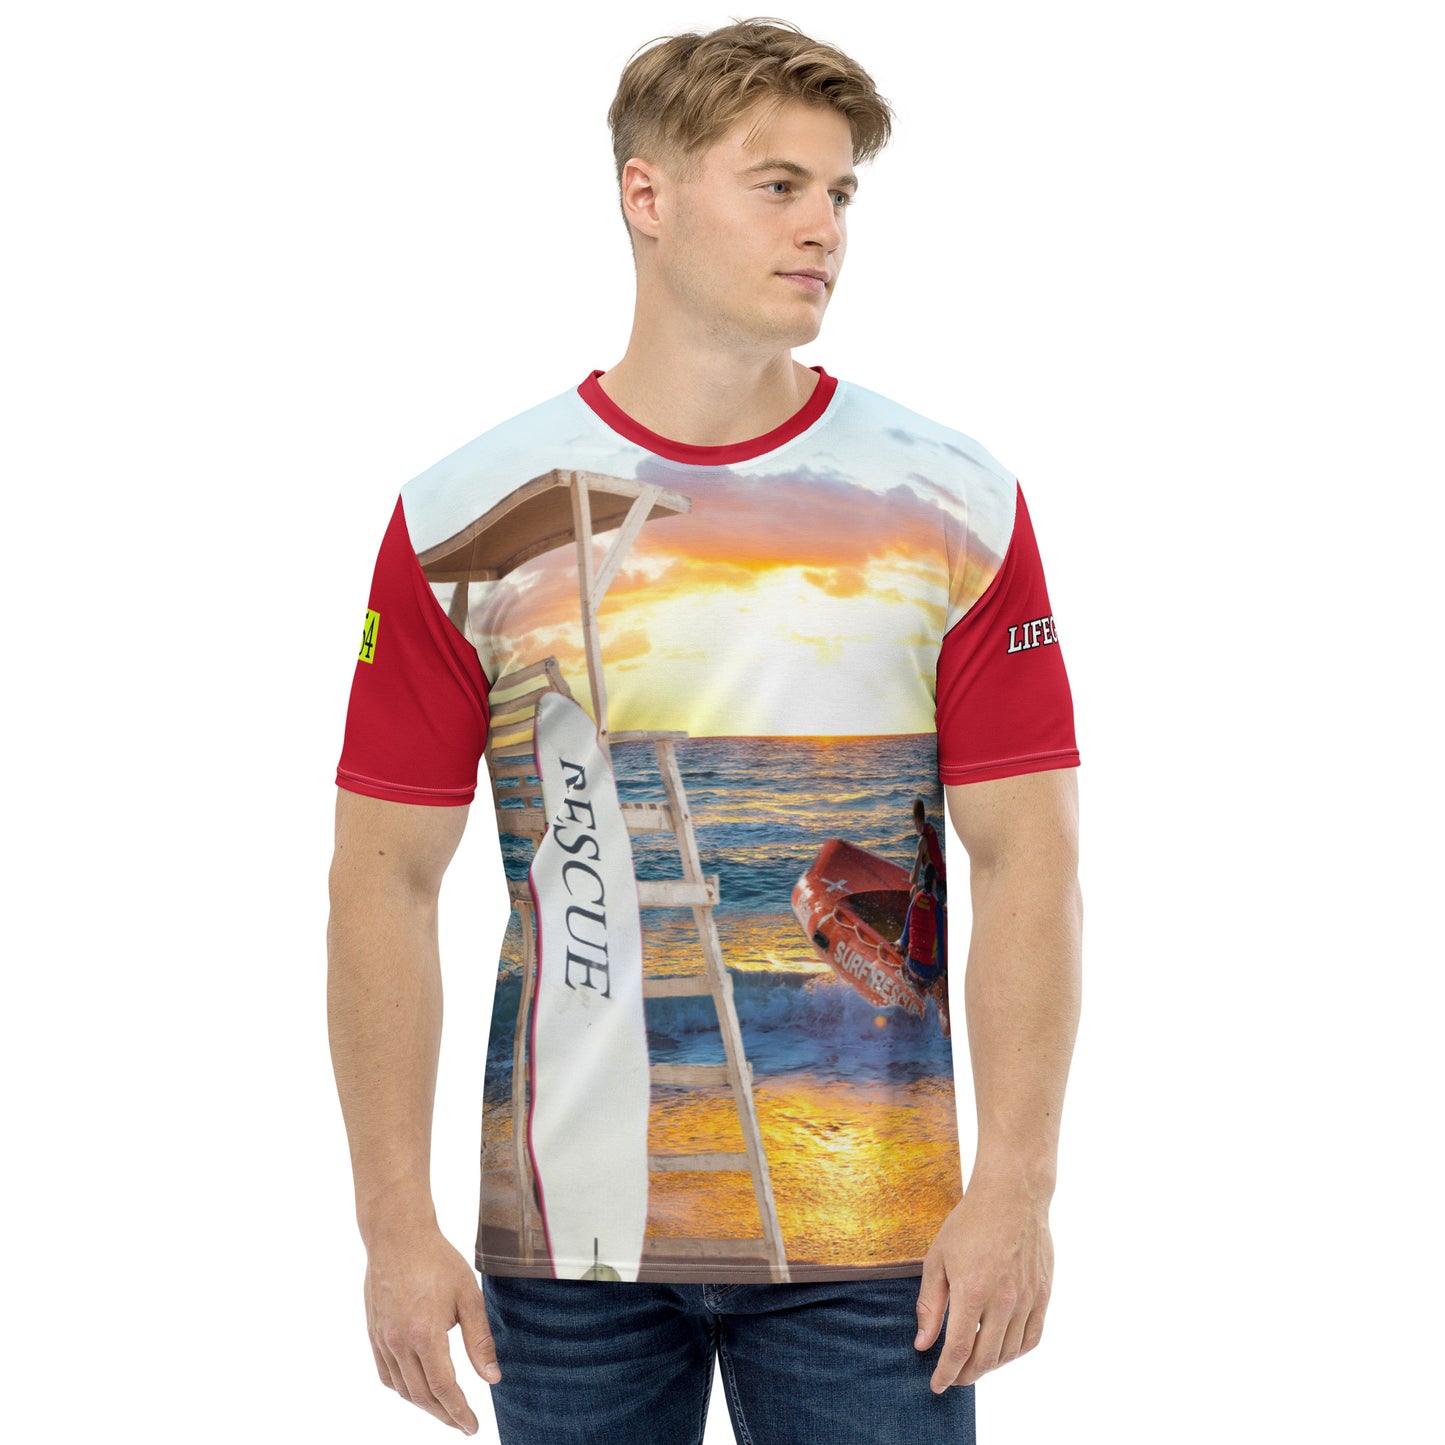 Lifeguard 954 Men's t-shirt